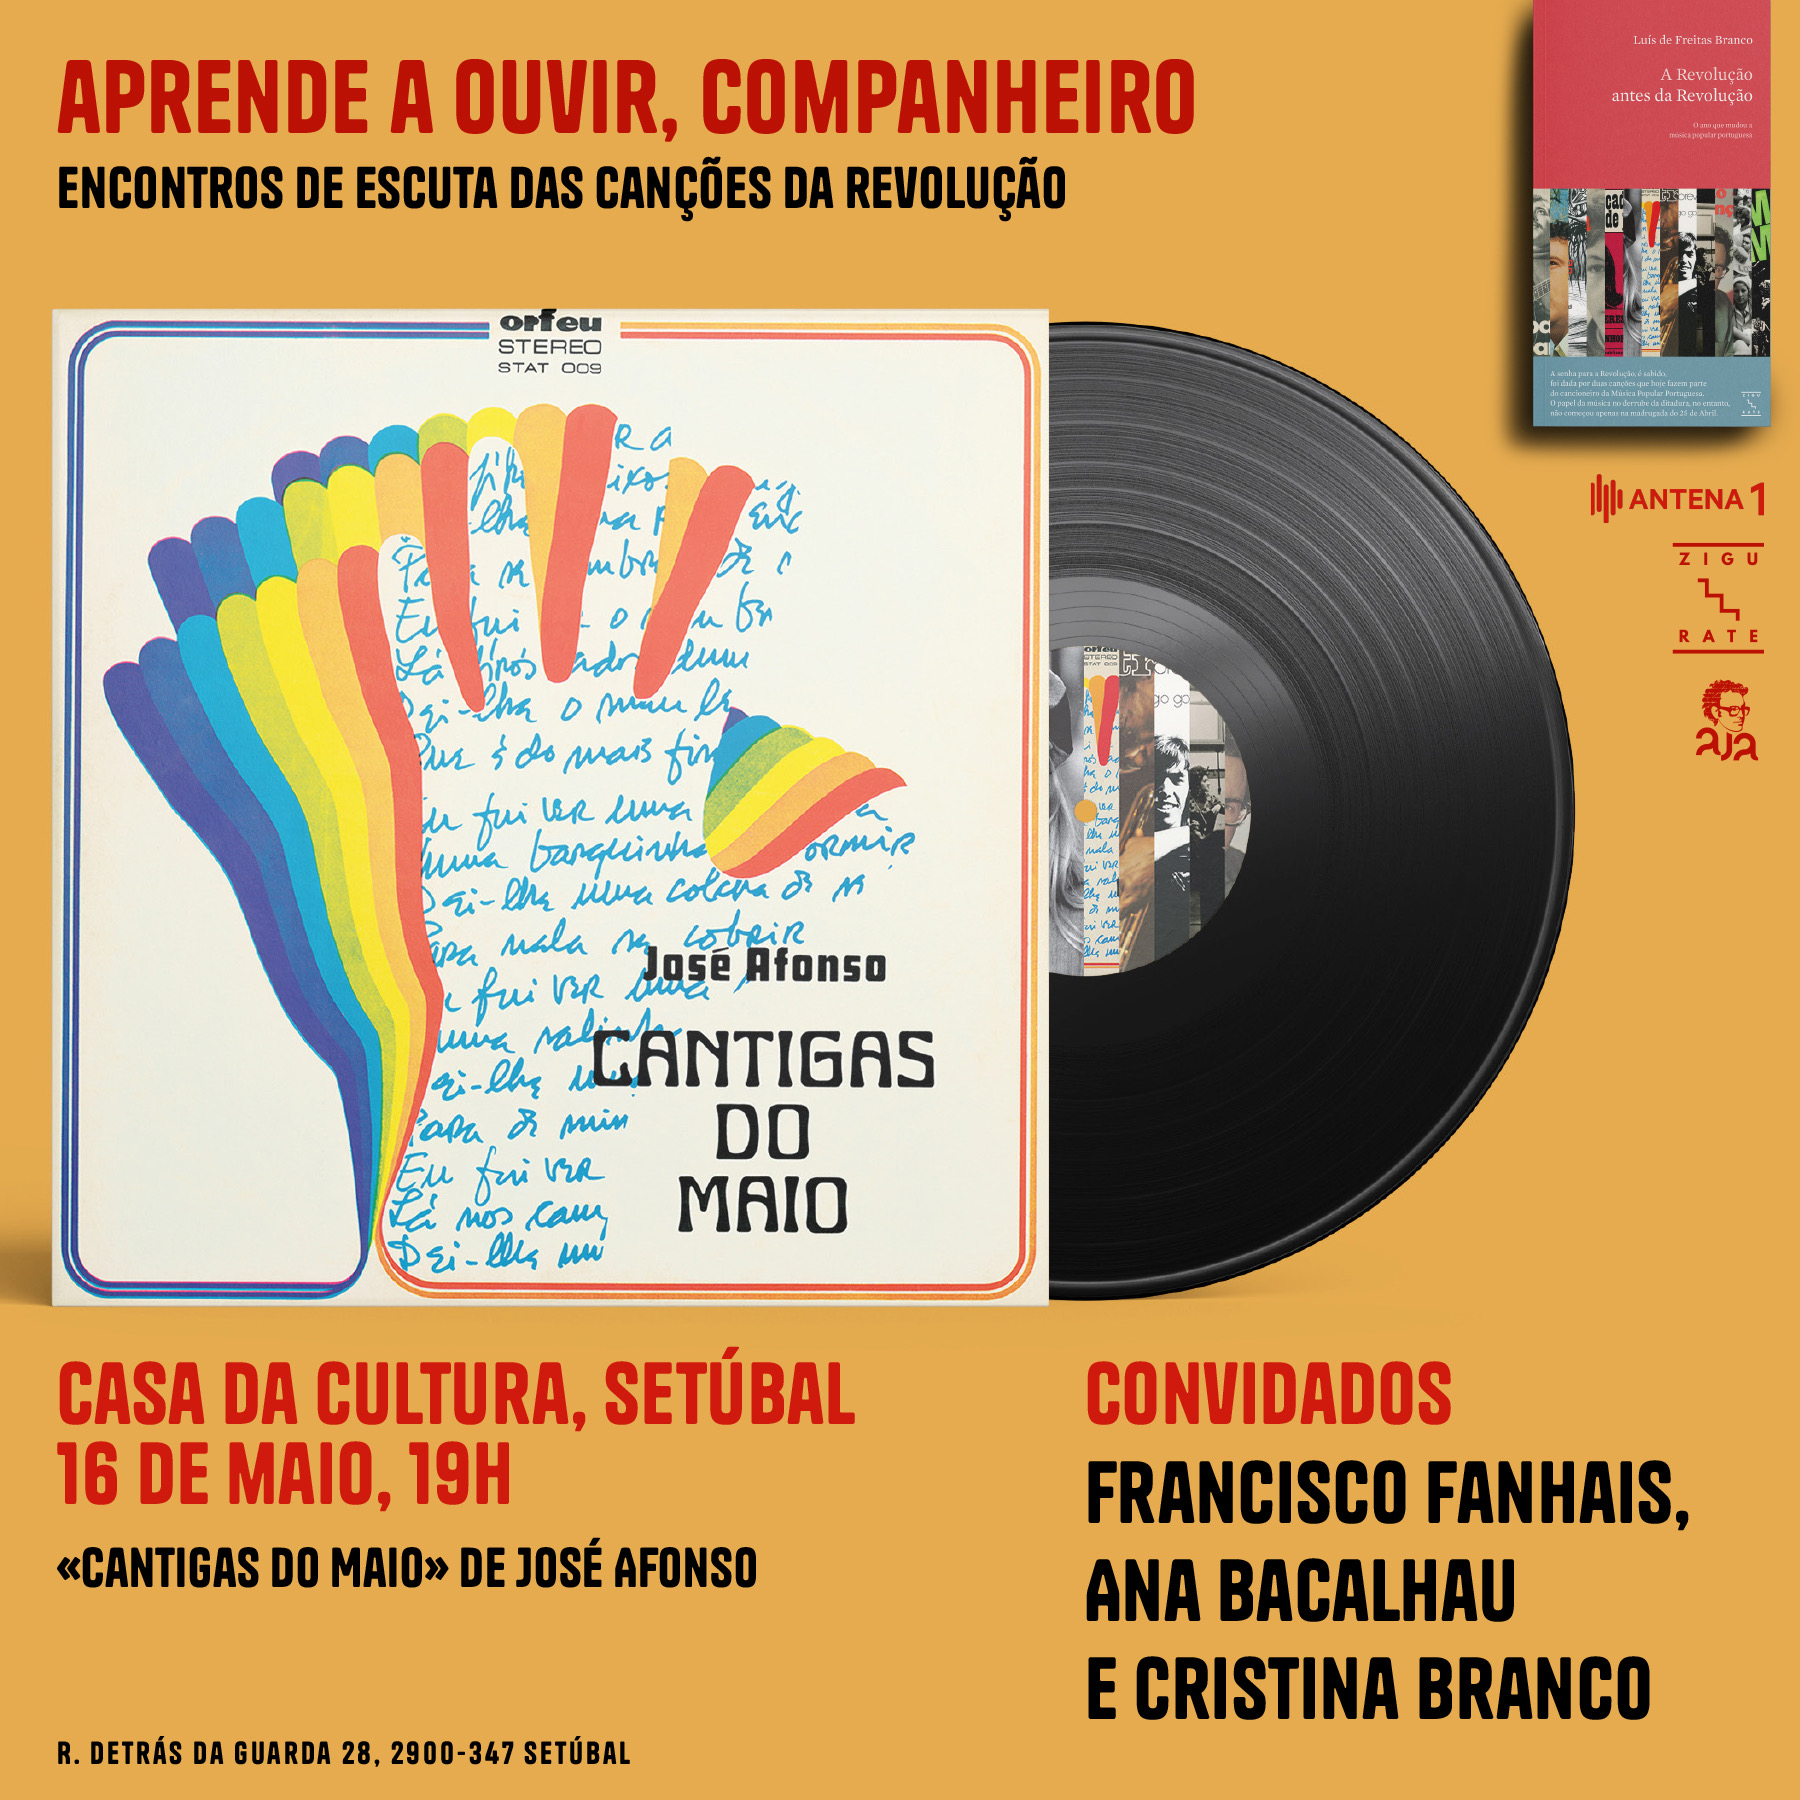 Capa Oficial do Evento APRENDE A OUVIR, COMPANHEIRO - “Cantigas do Maio” de José Afonso